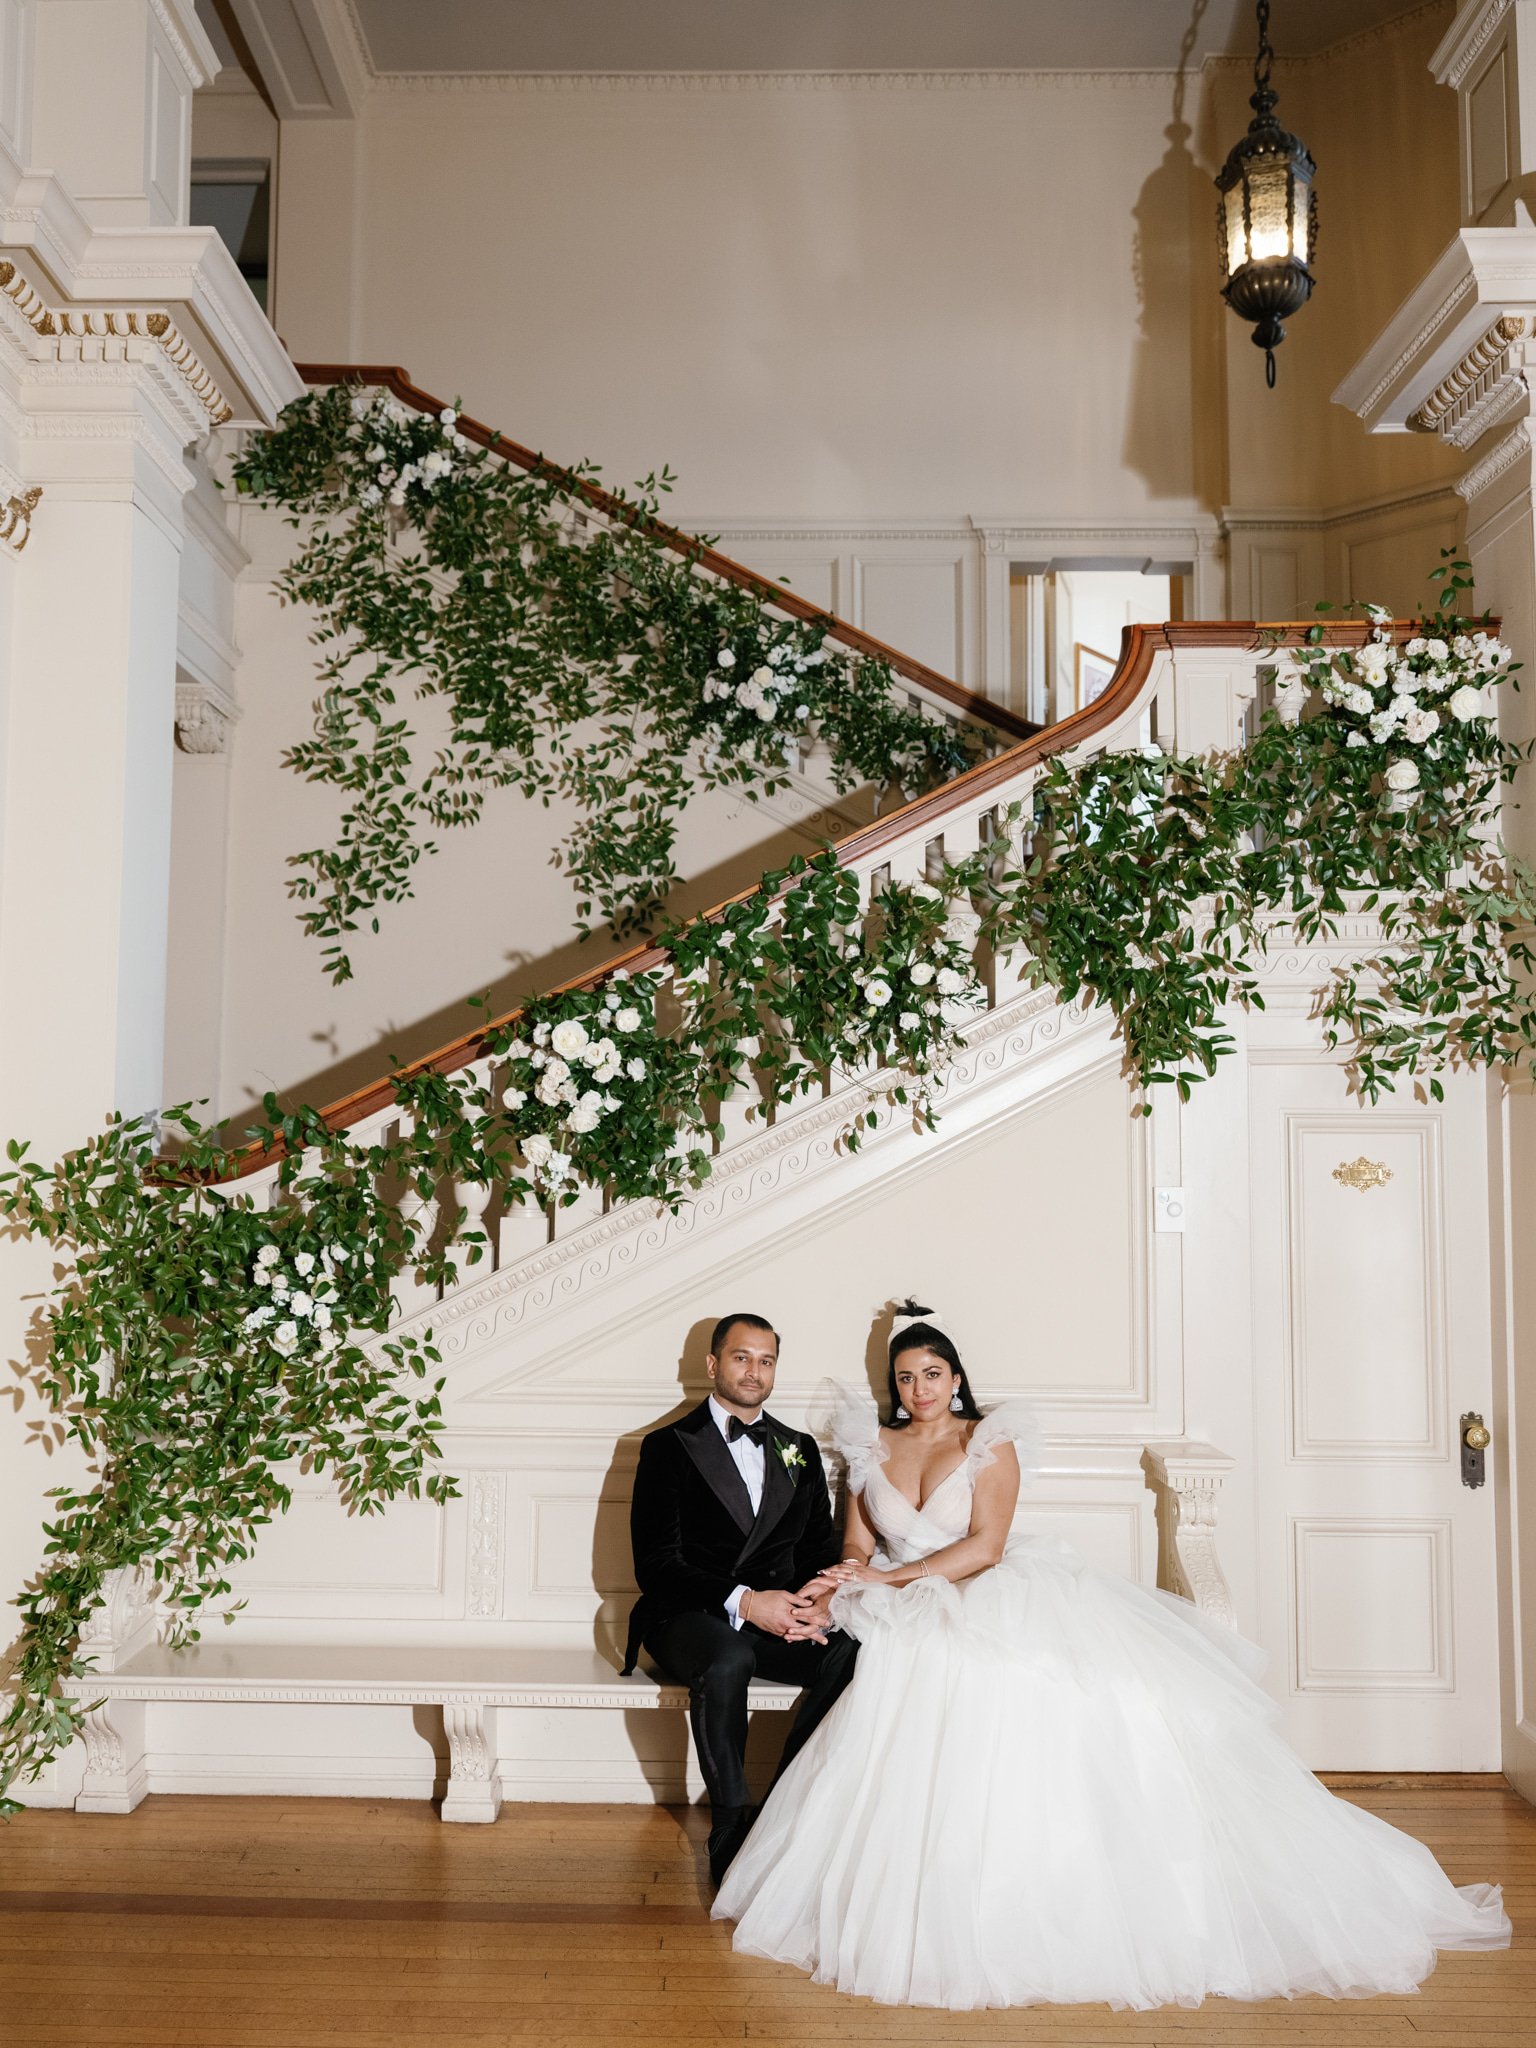 wedding-couple-cairnwood-staircase-greenery.jpg